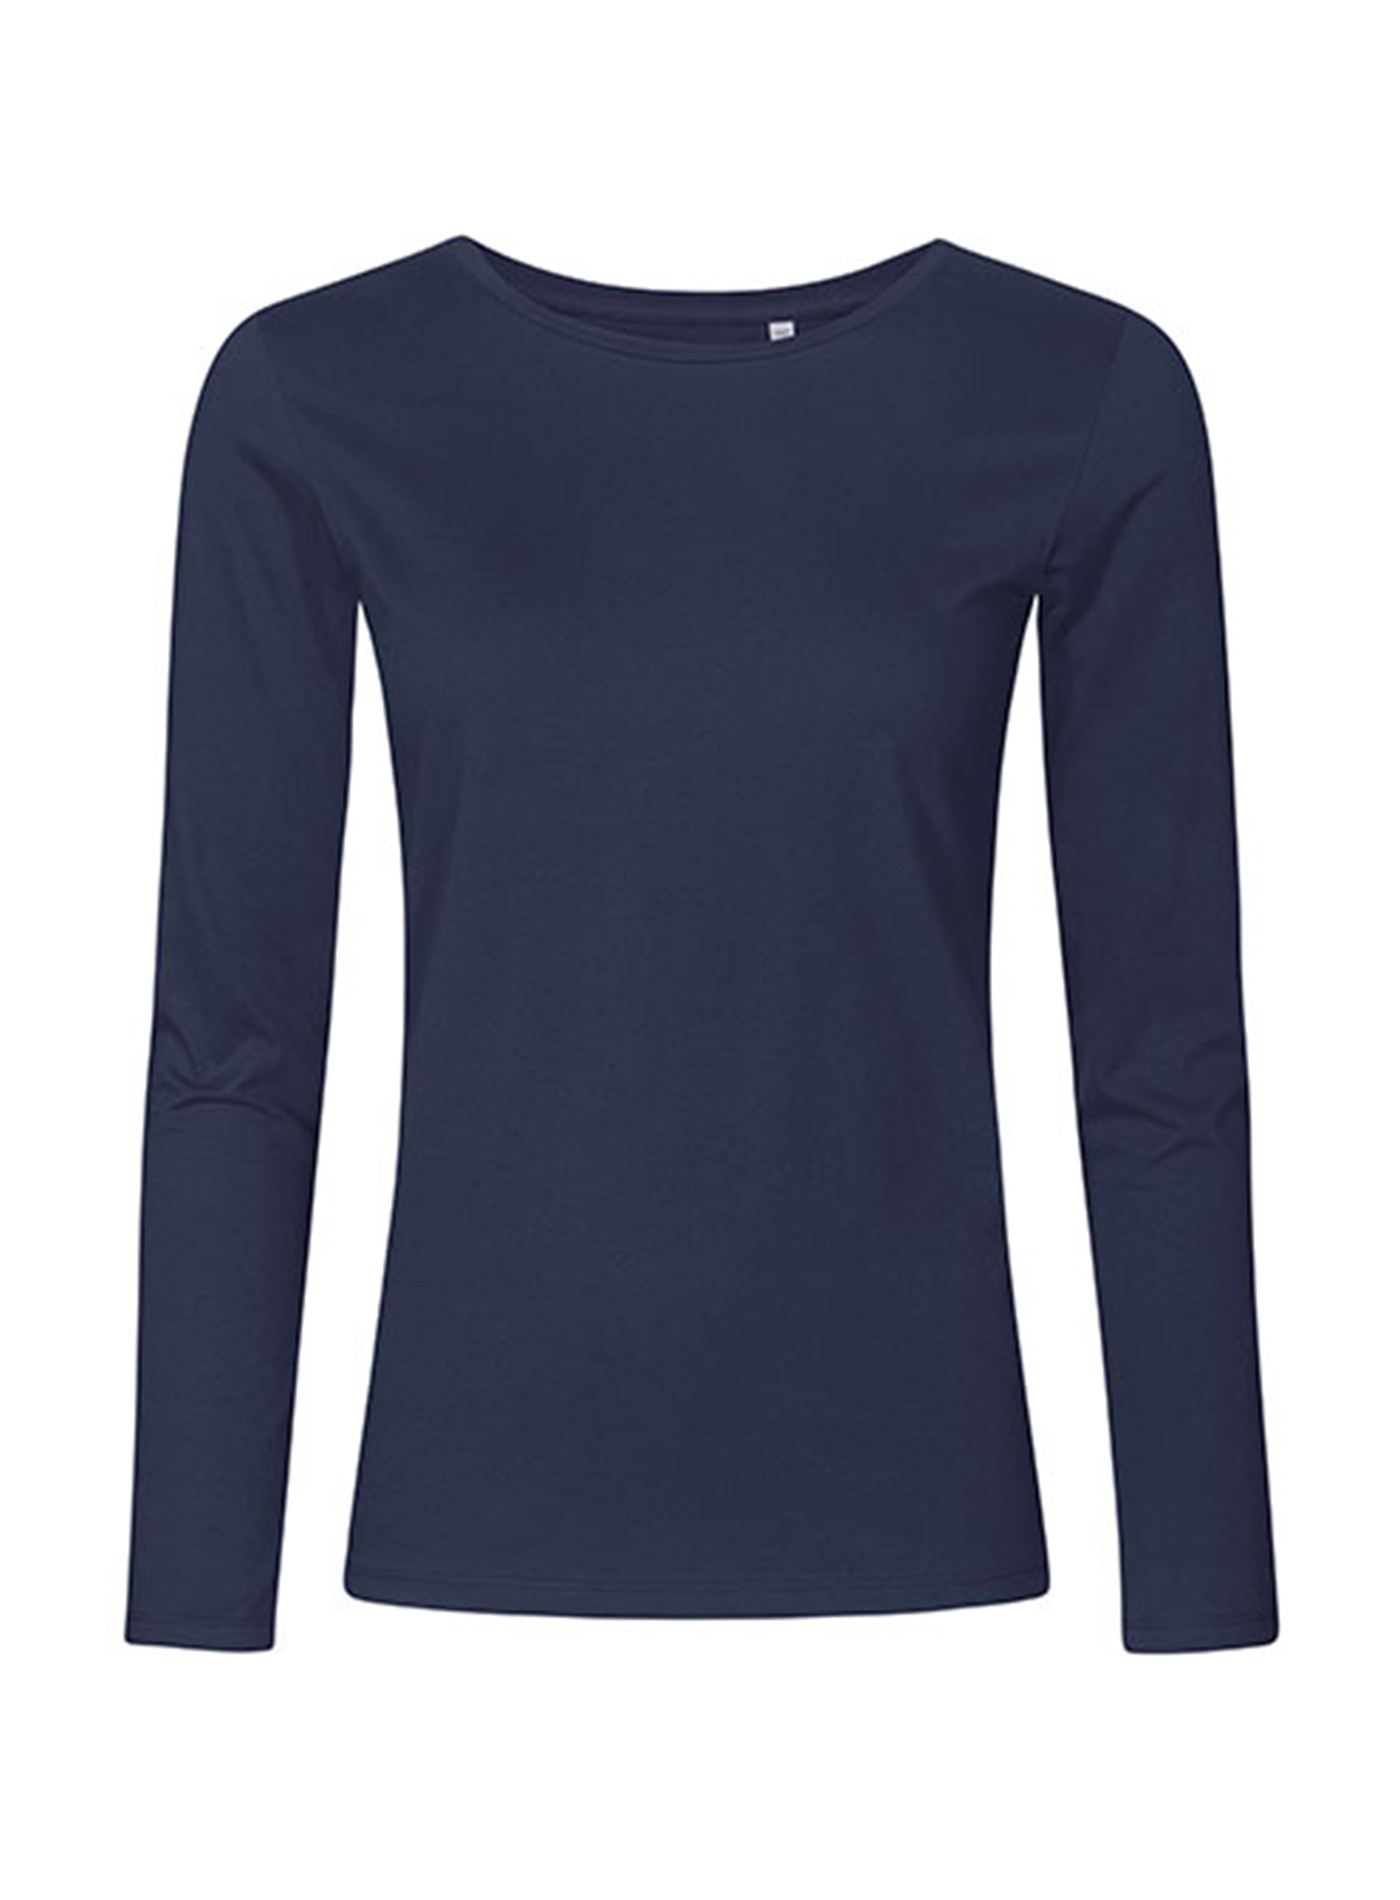 Dámské tričko s dlouhým rukávem s kulatým výstřihem Promodoro - Námořnická modrá XS